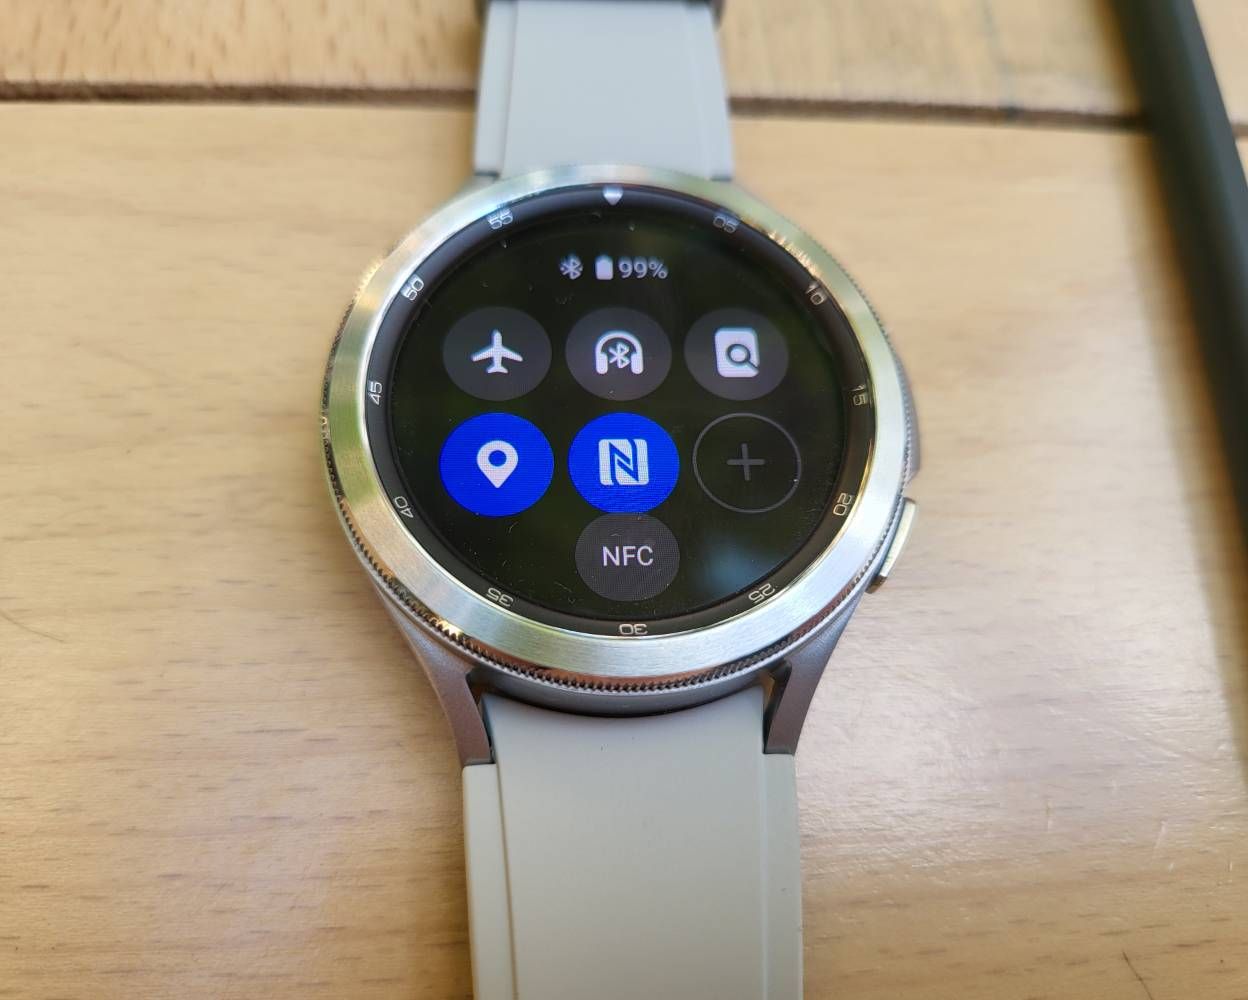 Cum platesc cu Galaxy Watch si Google pay? - Samsung Community